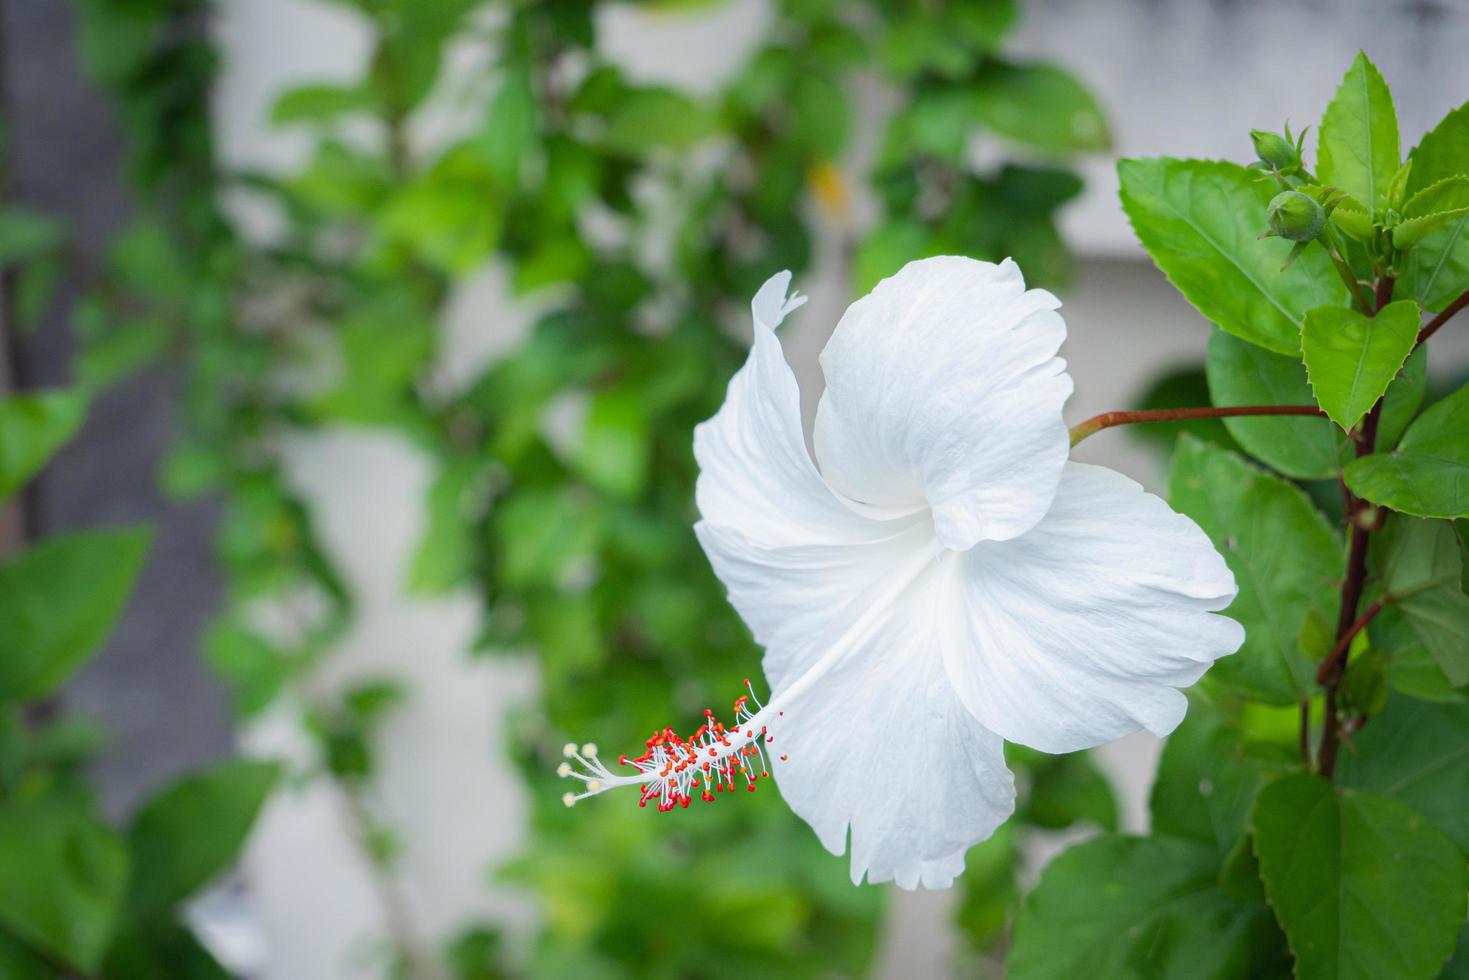 fleur d'hibiscus ou fleur de chaussure, rose chinoise blanche à étamines rouges. fleur d'extérieur pétales blancs longues étamines. surnom de reine des fleurs tropicales. photo